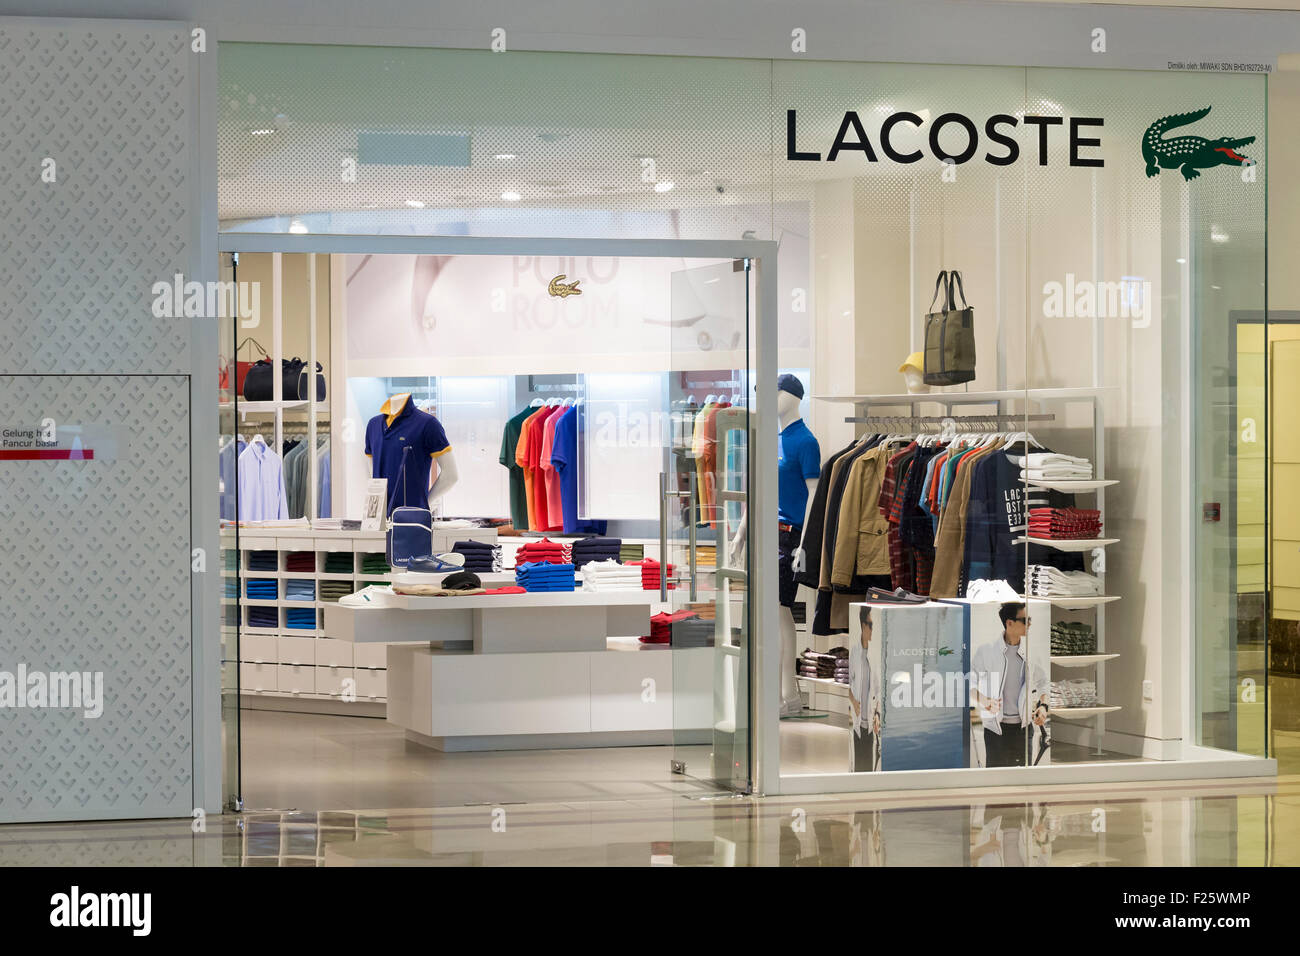 Negozi Lacoste Online, 58% OFF | www.rachelotoole.ie